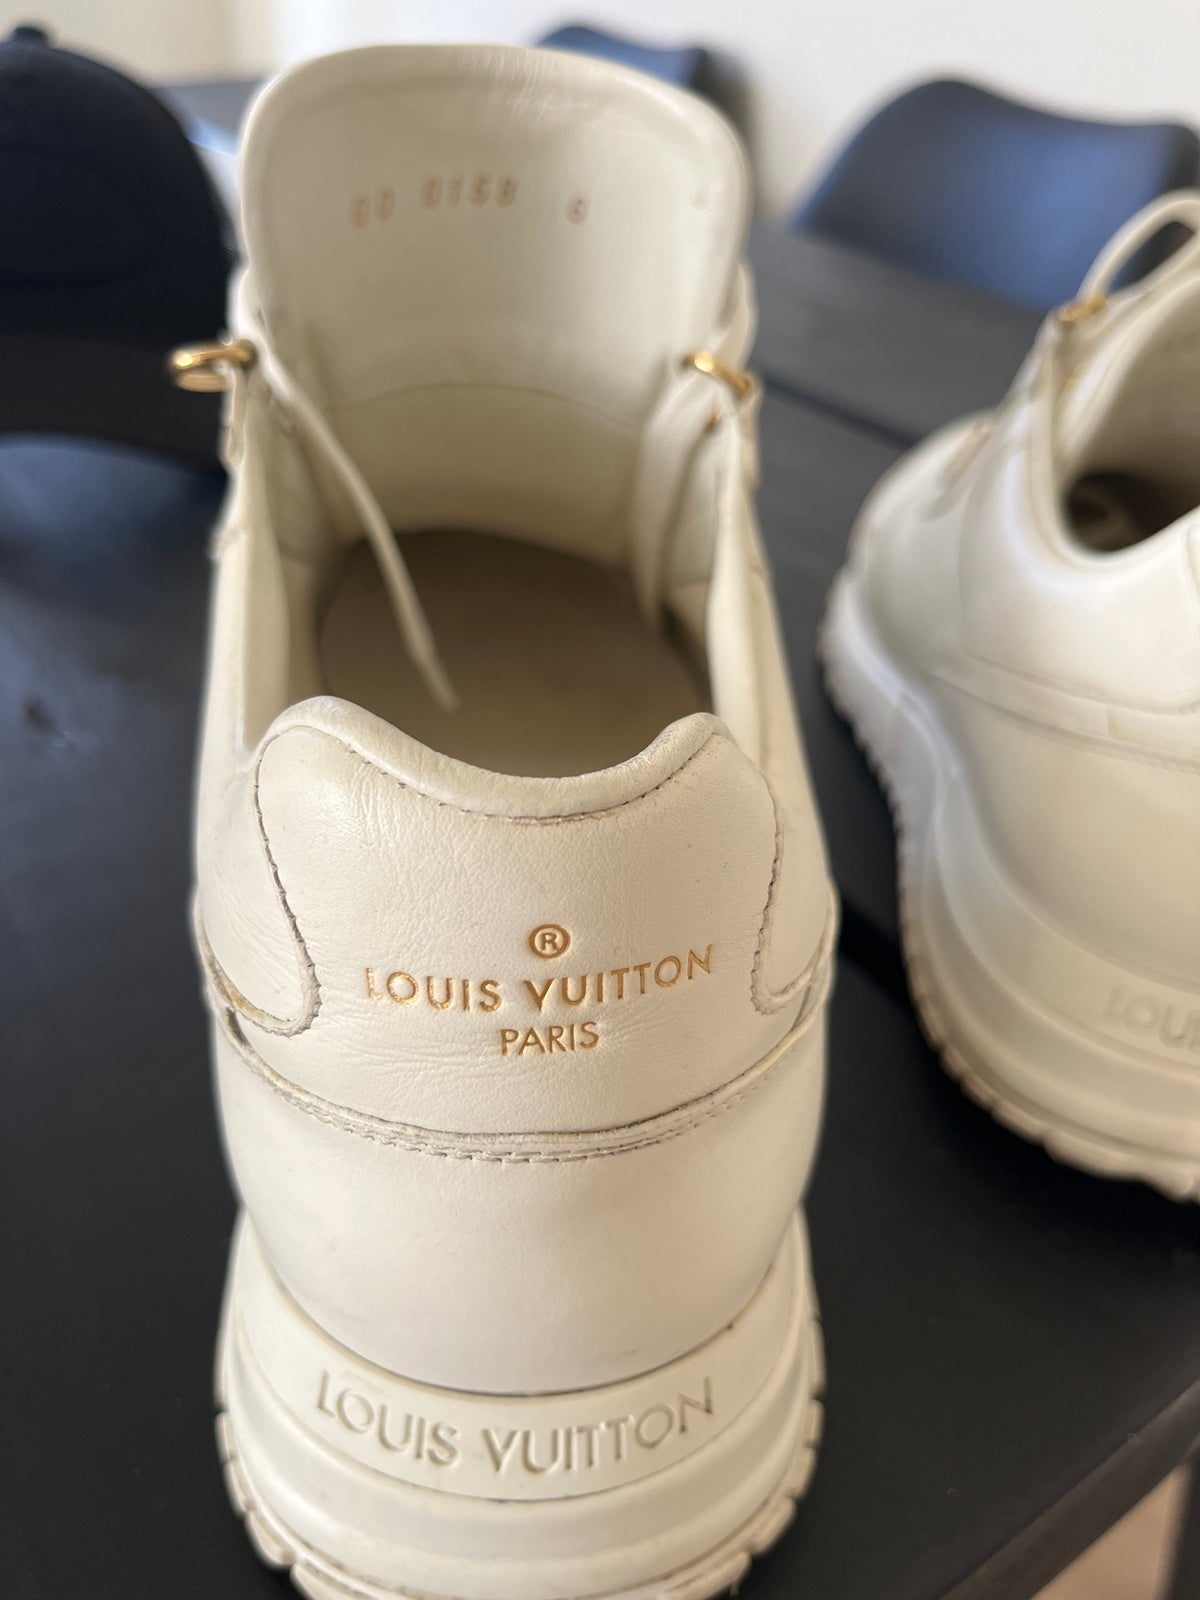 Find Louis Vuitton Sko på DBA - køb og salg af nyt og brugt